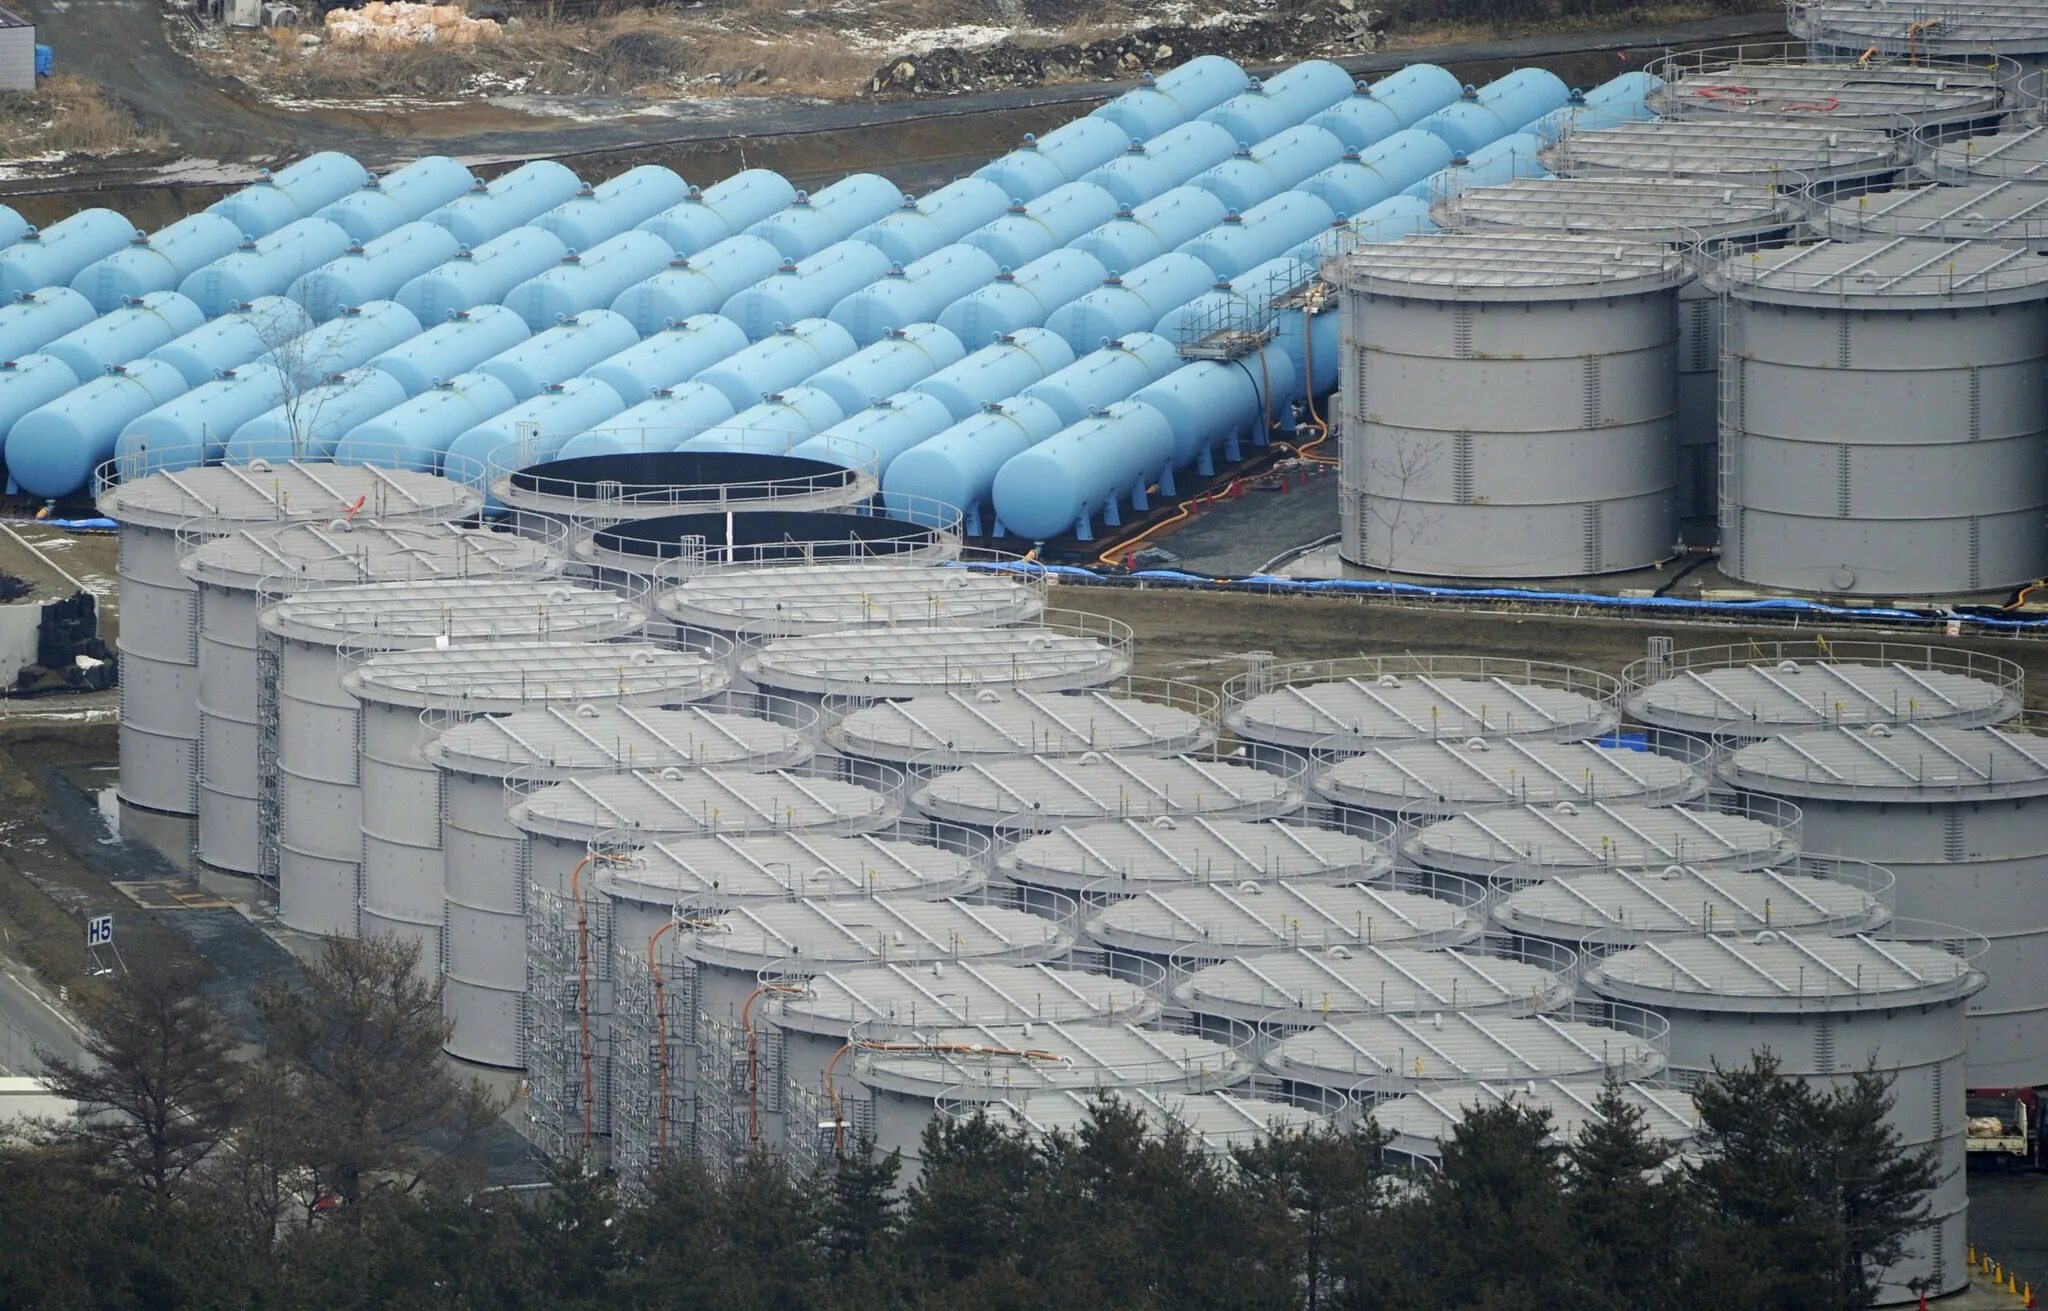 Фукусима Даини II. Хранилище воды. Хранилище радиоактивных отходов. Бочки с водой на Фукусиме. Радиоактивные отходы аэс